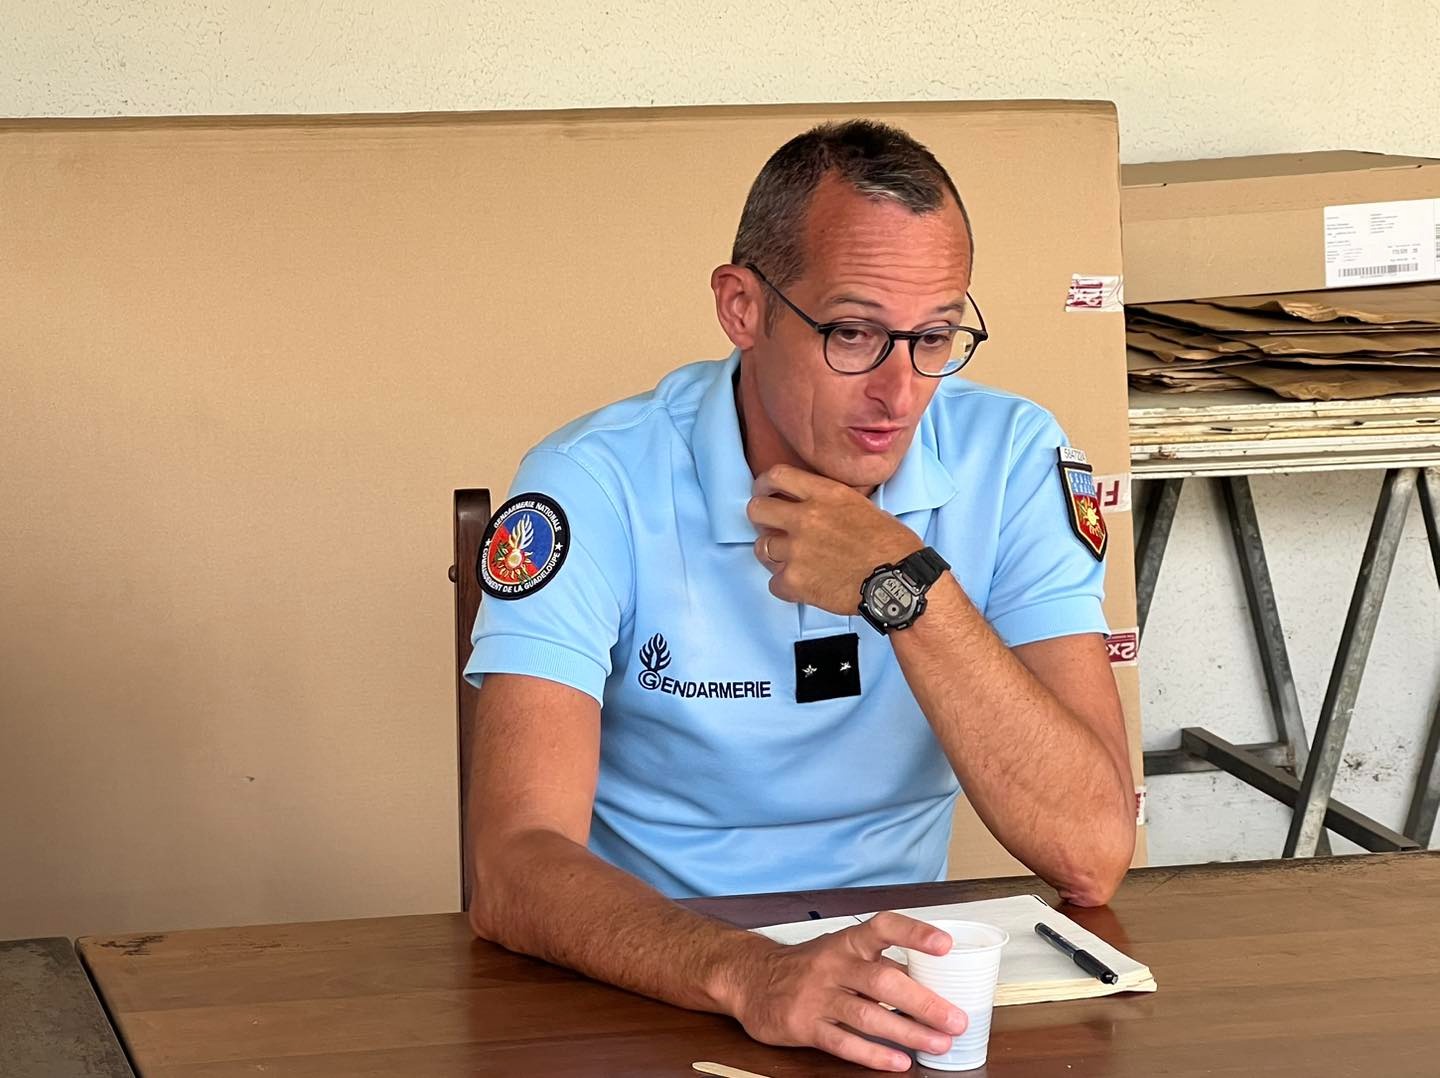     Général Lamballe, commandant de la gendarmerie de Guadeloupe : « La rue doit redevenir un espace de liberté » 

